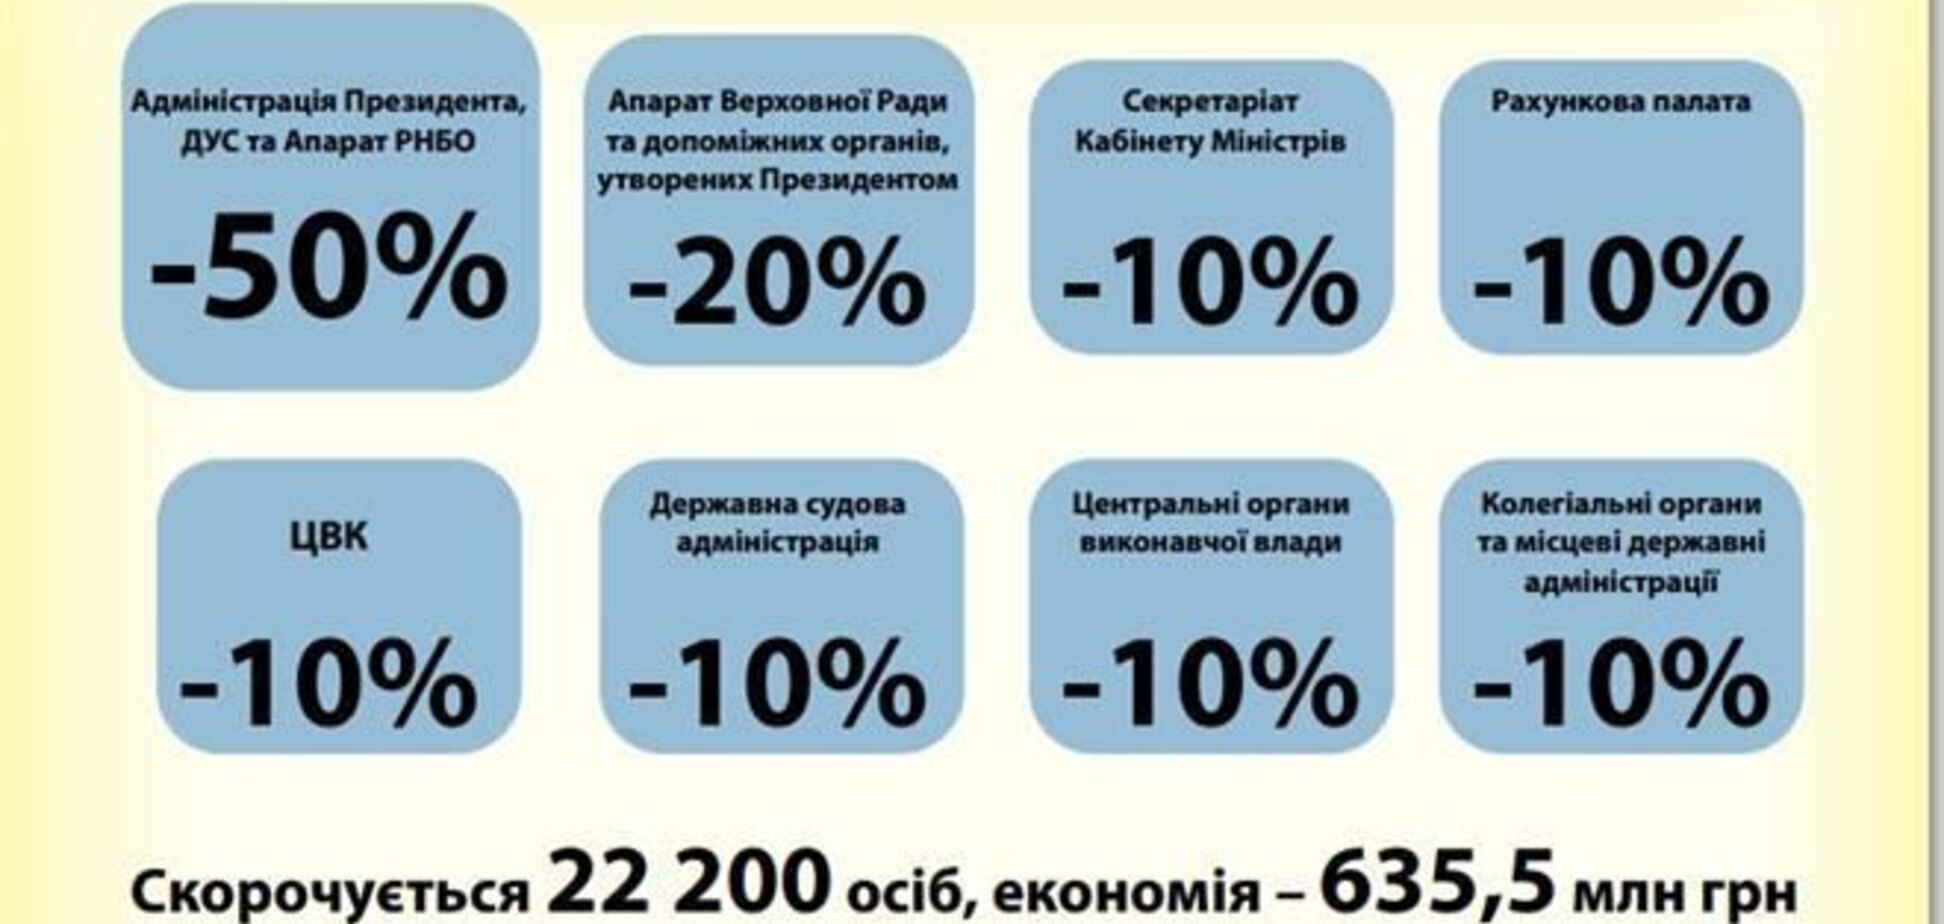 У Яценюка сподіваються заощадити на скороченні 10% чиновників 635 млн грн